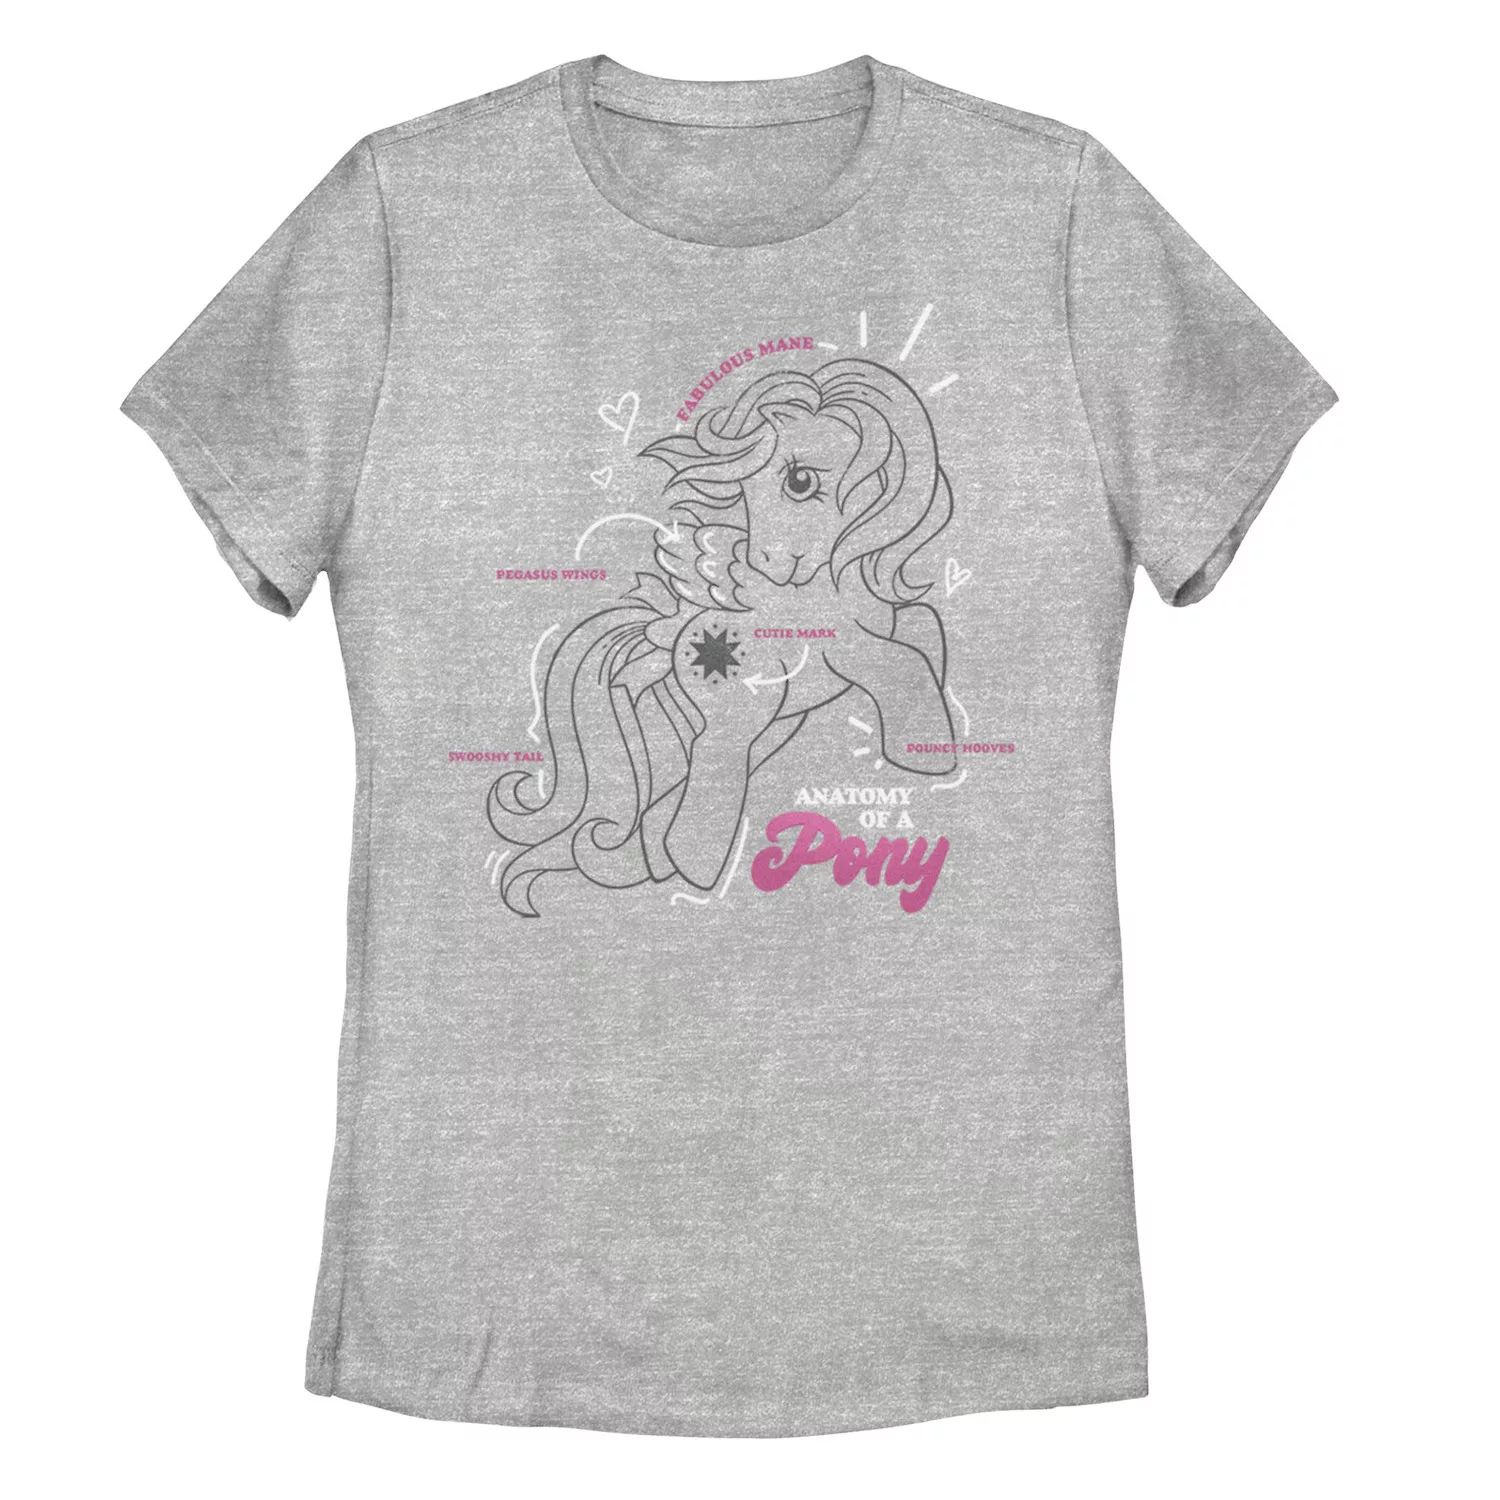 Анатомия футболки с рисунком пони My Little Pony для юниоров My Little Pony детская футболка my little pony pegasister с ретро графикой 1983 года my little pony